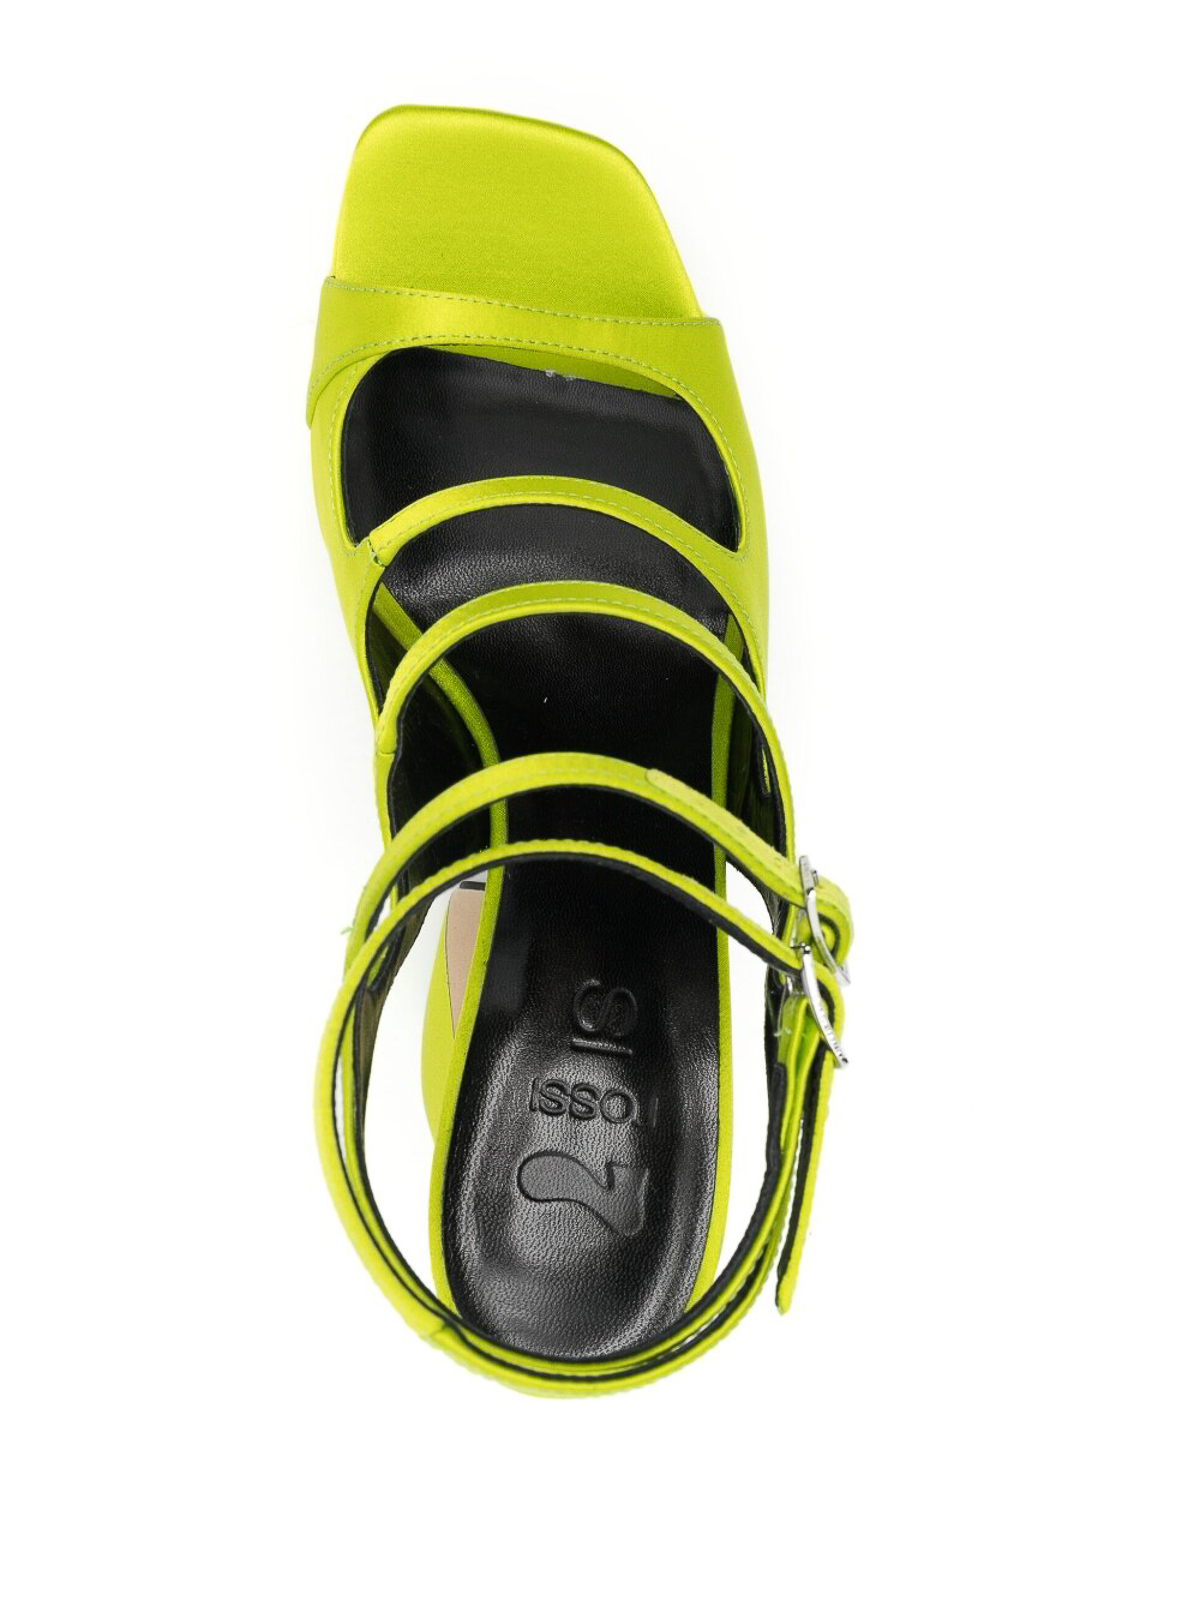 Shop Si Rossi Crepe Satin Heel Sandals In Yellow